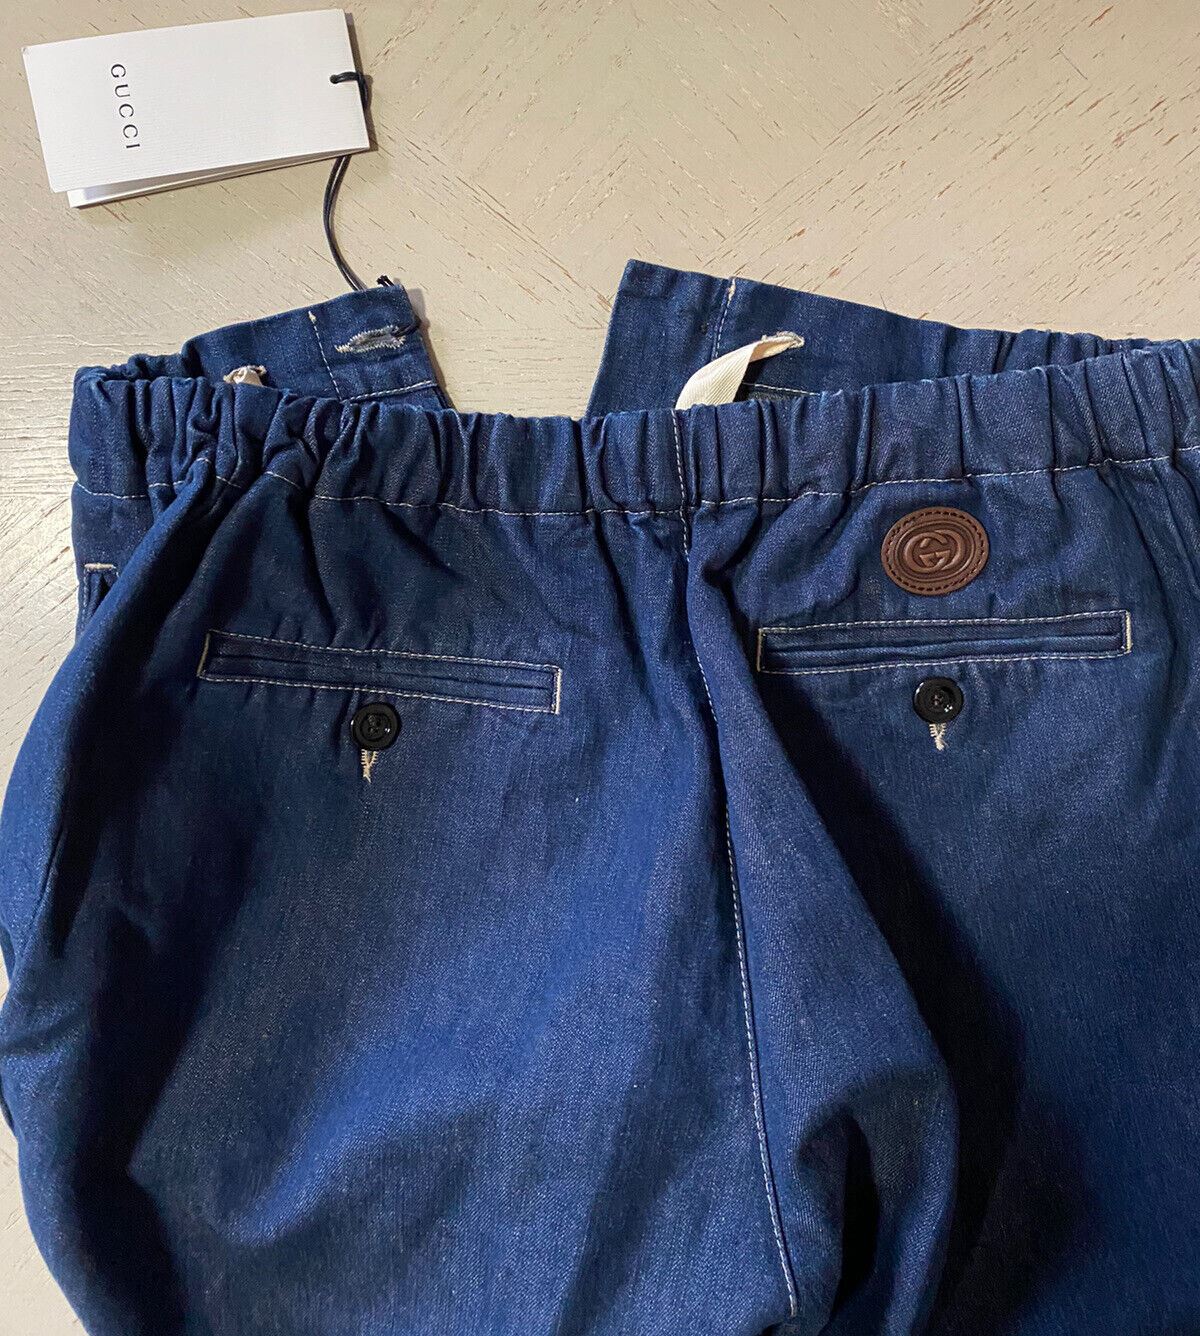 Neu mit Etikett: 1.250 $ Gucci Herren-Shorts aus gewaschenem Denim mit GG-Leder, DK-Blau, 28 US/44 Eu